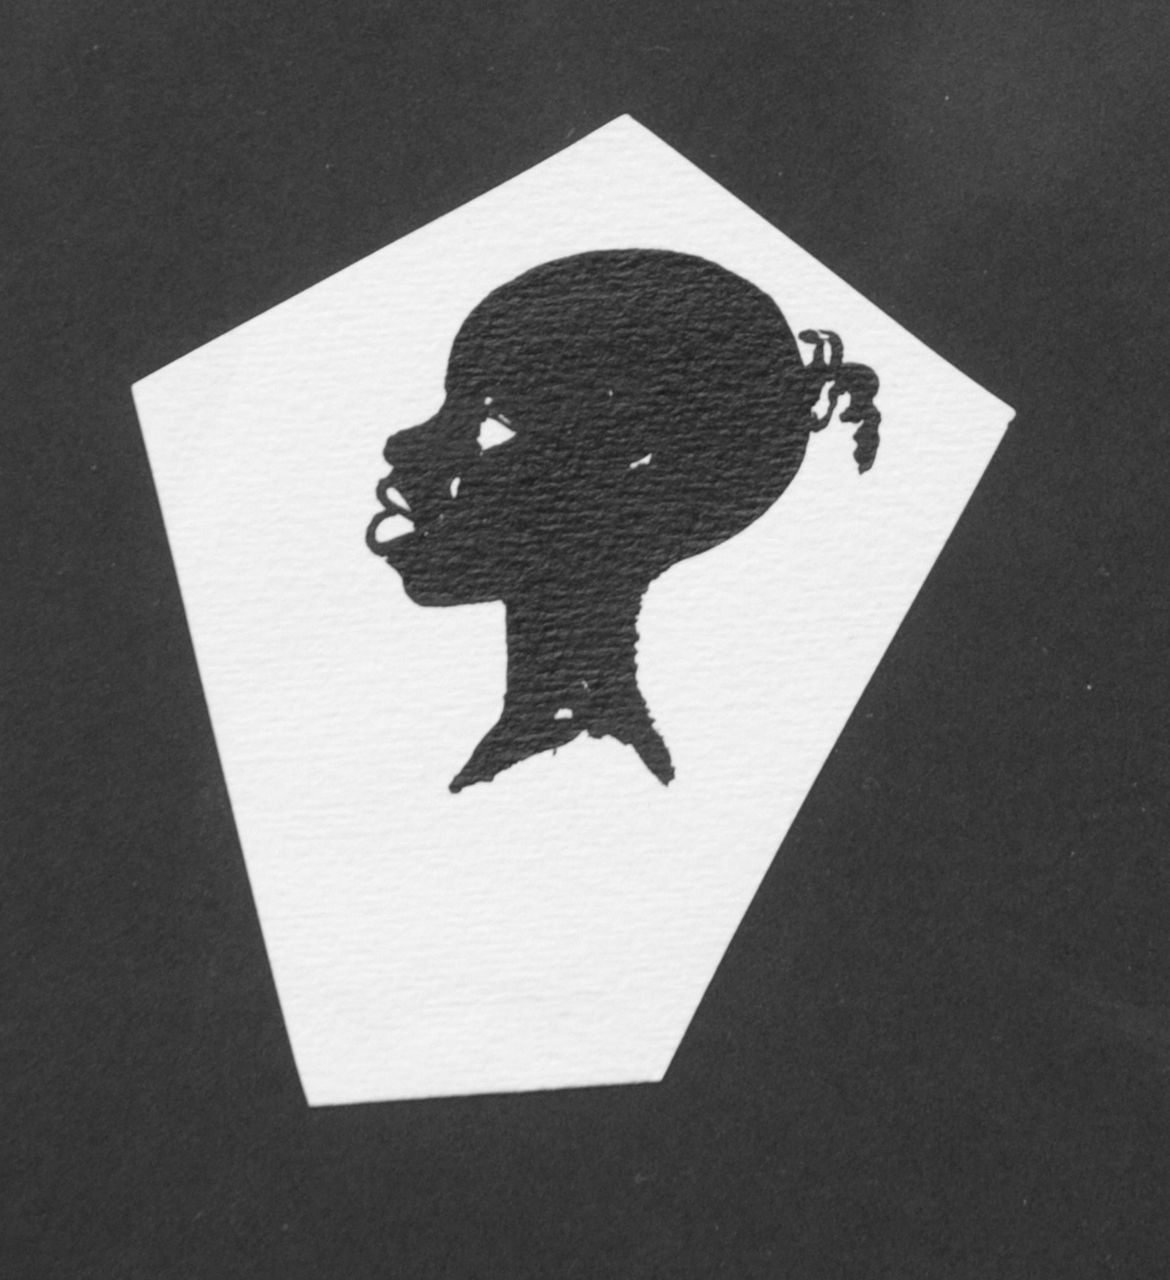 Oranje-Nassau (Prinses Beatrix) B.W.A. van | Beatrix Wilhelmina Armgard van Oranje-Nassau (Prinses Beatrix), Negerkopje, potlood en Oost-Indische inkt op papier 9,0 x 8,1 cm, te dateren augustus 1960